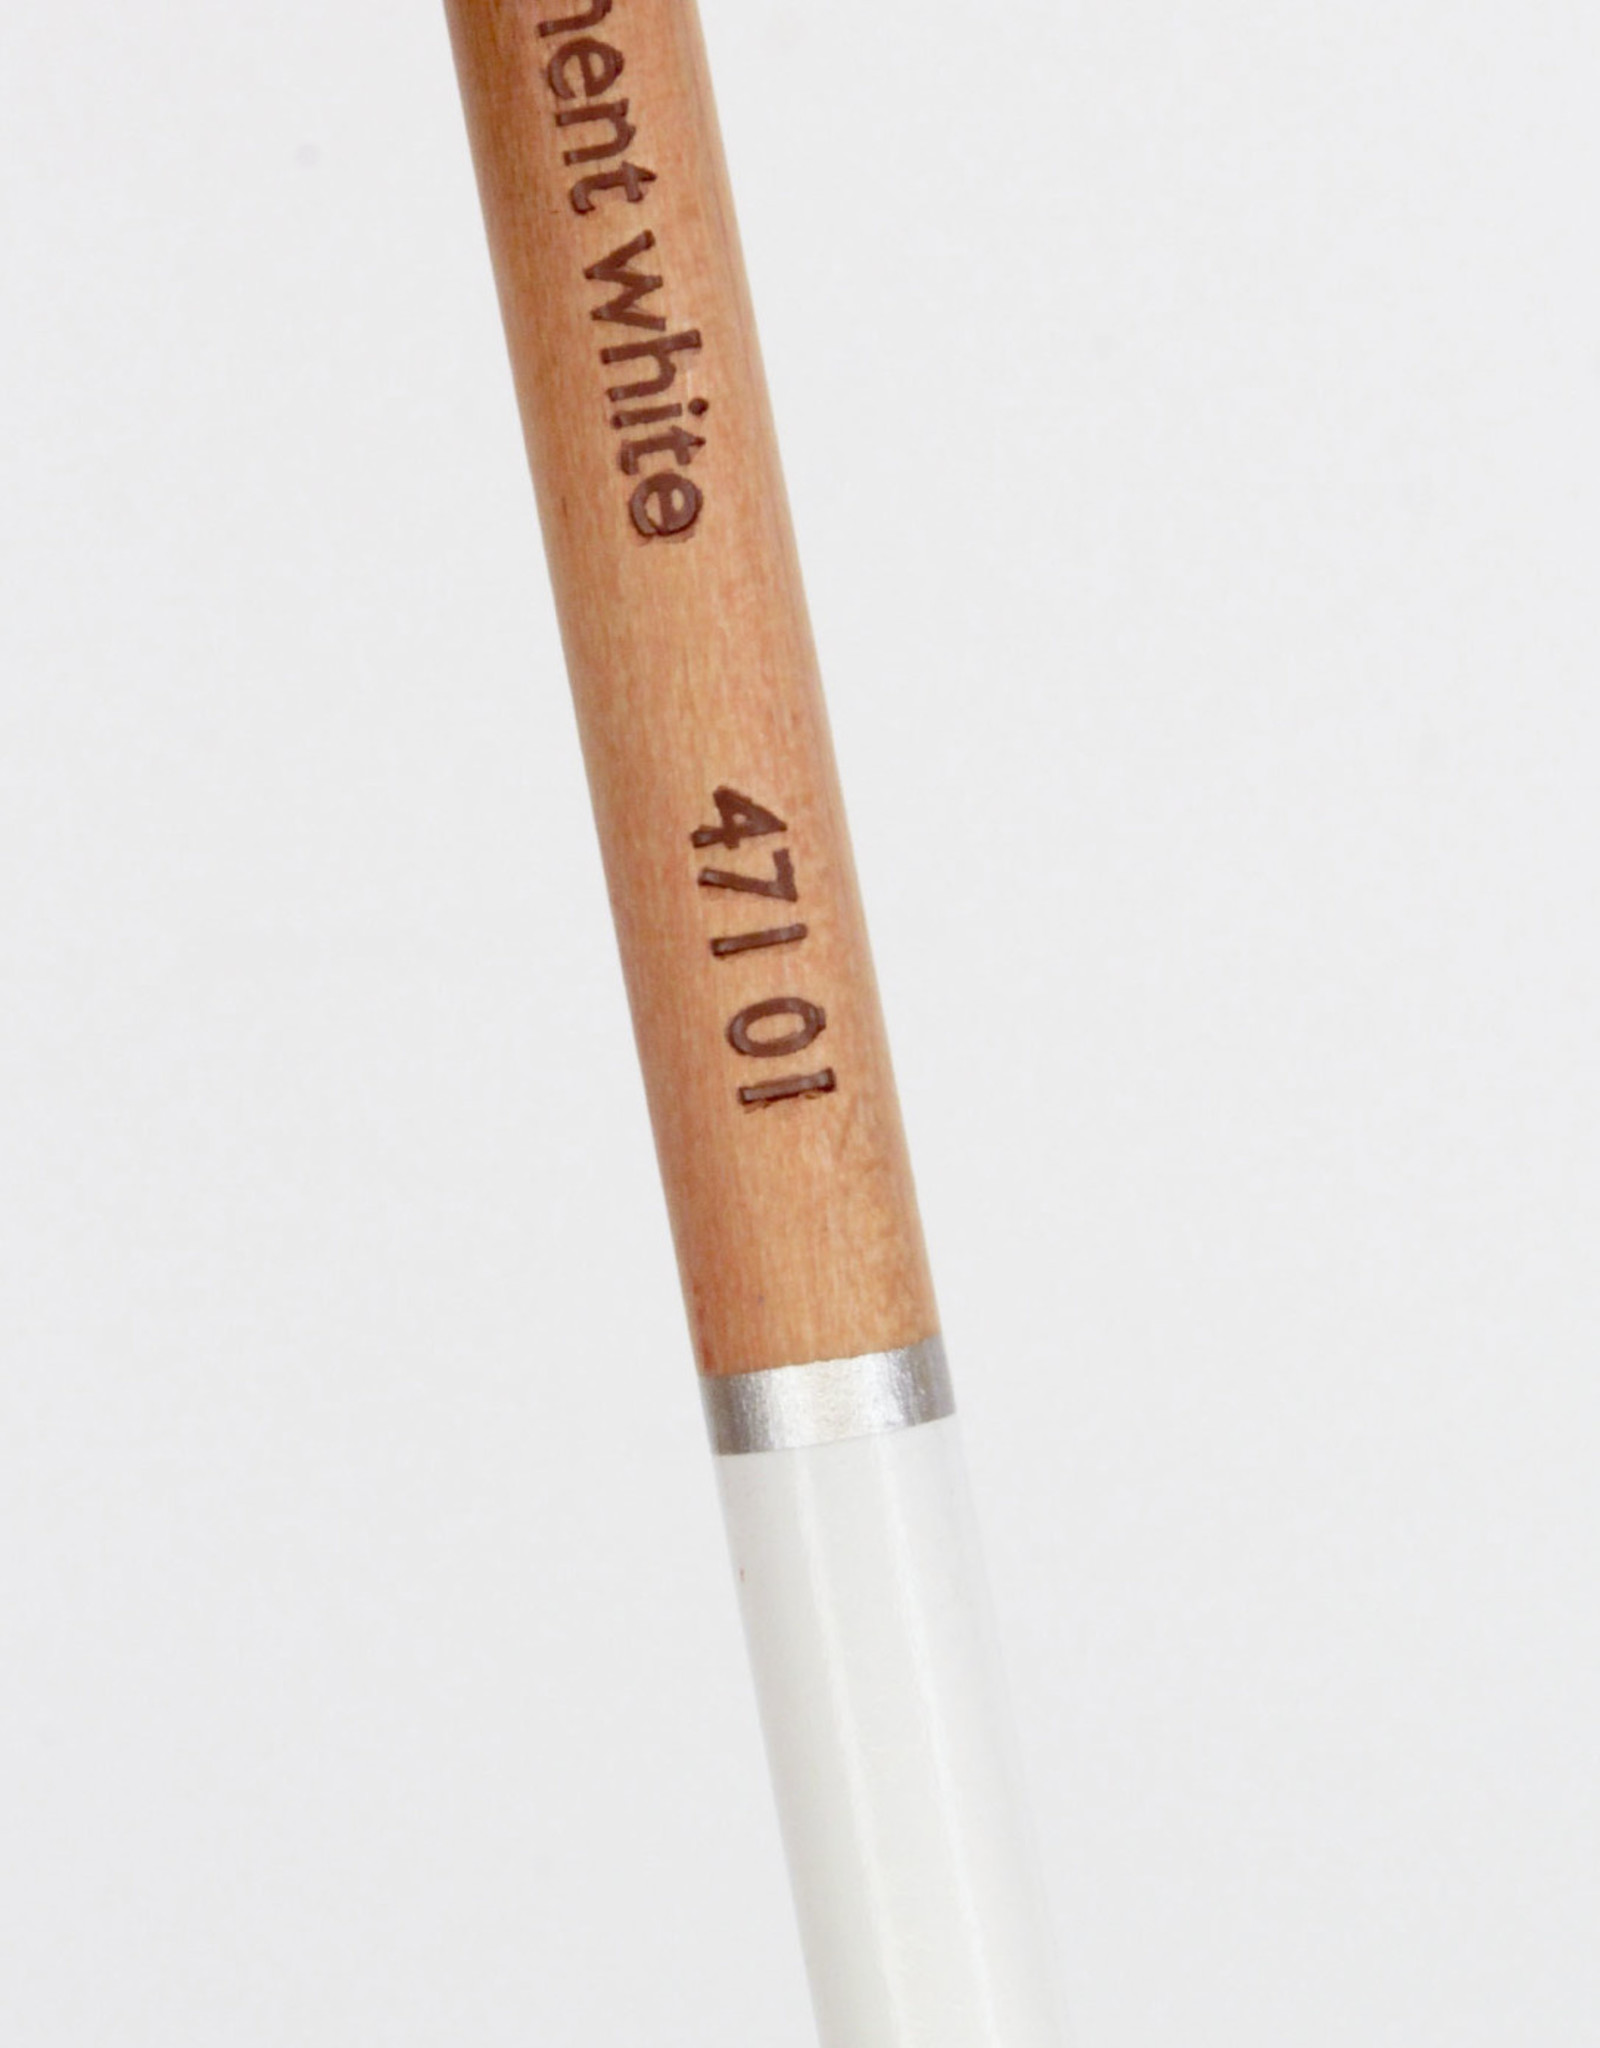 Cretacolor, Fine Art Pastel Pencil, Permanent White